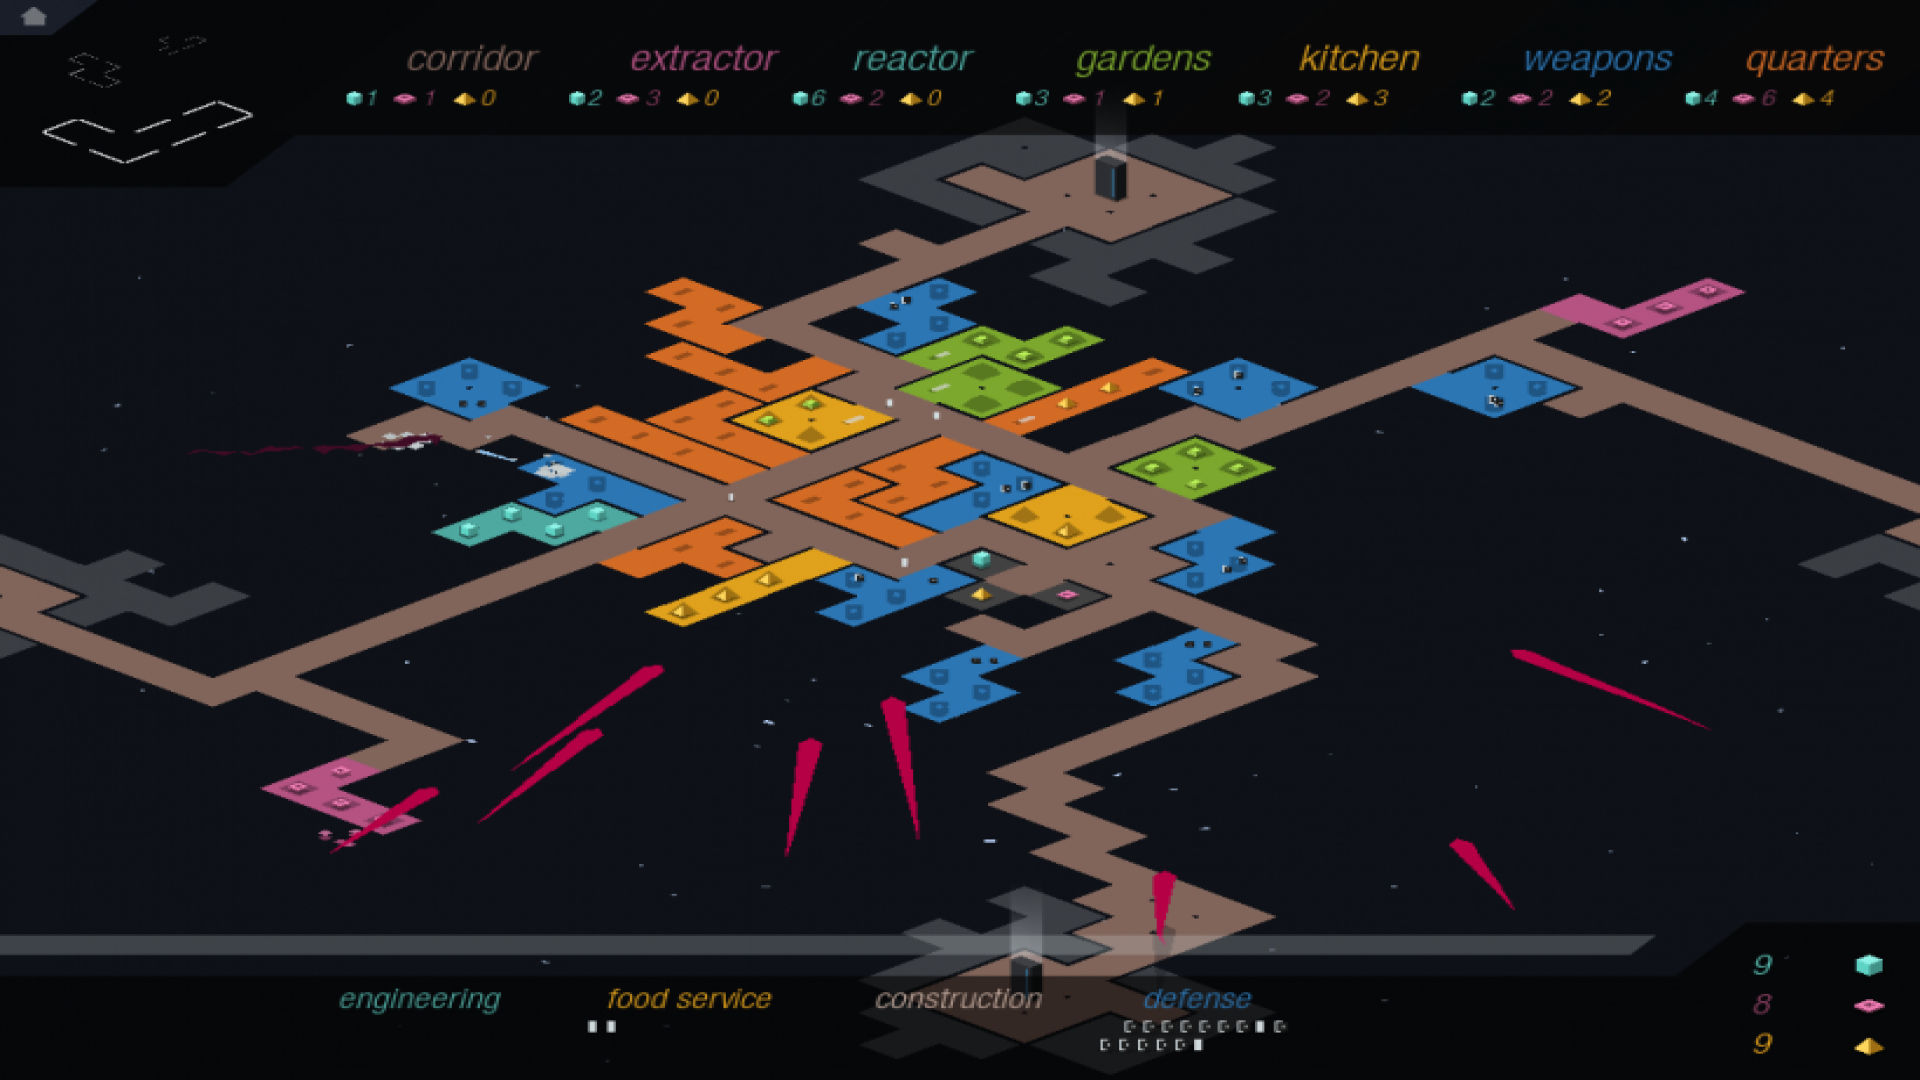 เกมกลยุทธ์มือถือที่ดีที่สุด: Rymdkapsel รูปภาพแสดงแผนที่หลายสีที่น่าตื่นเต้น